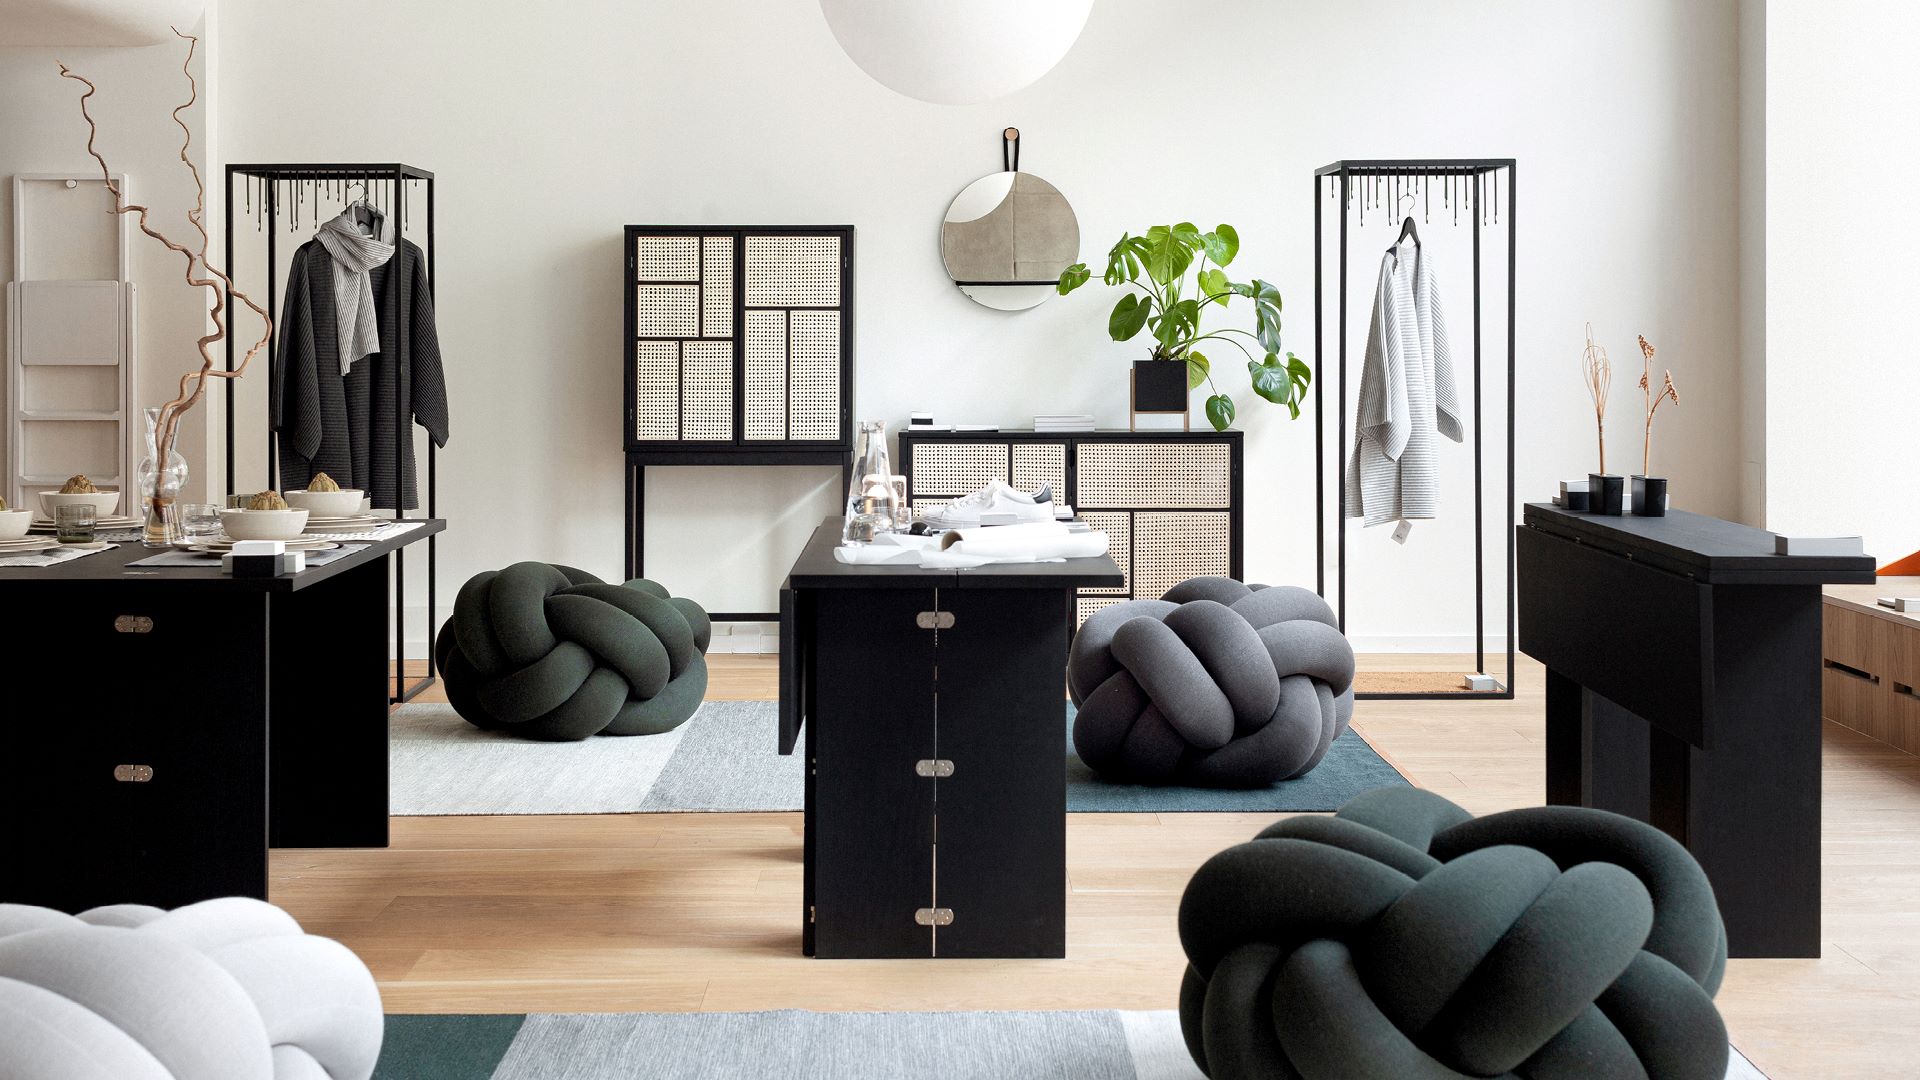 Image: Design House Stockholm